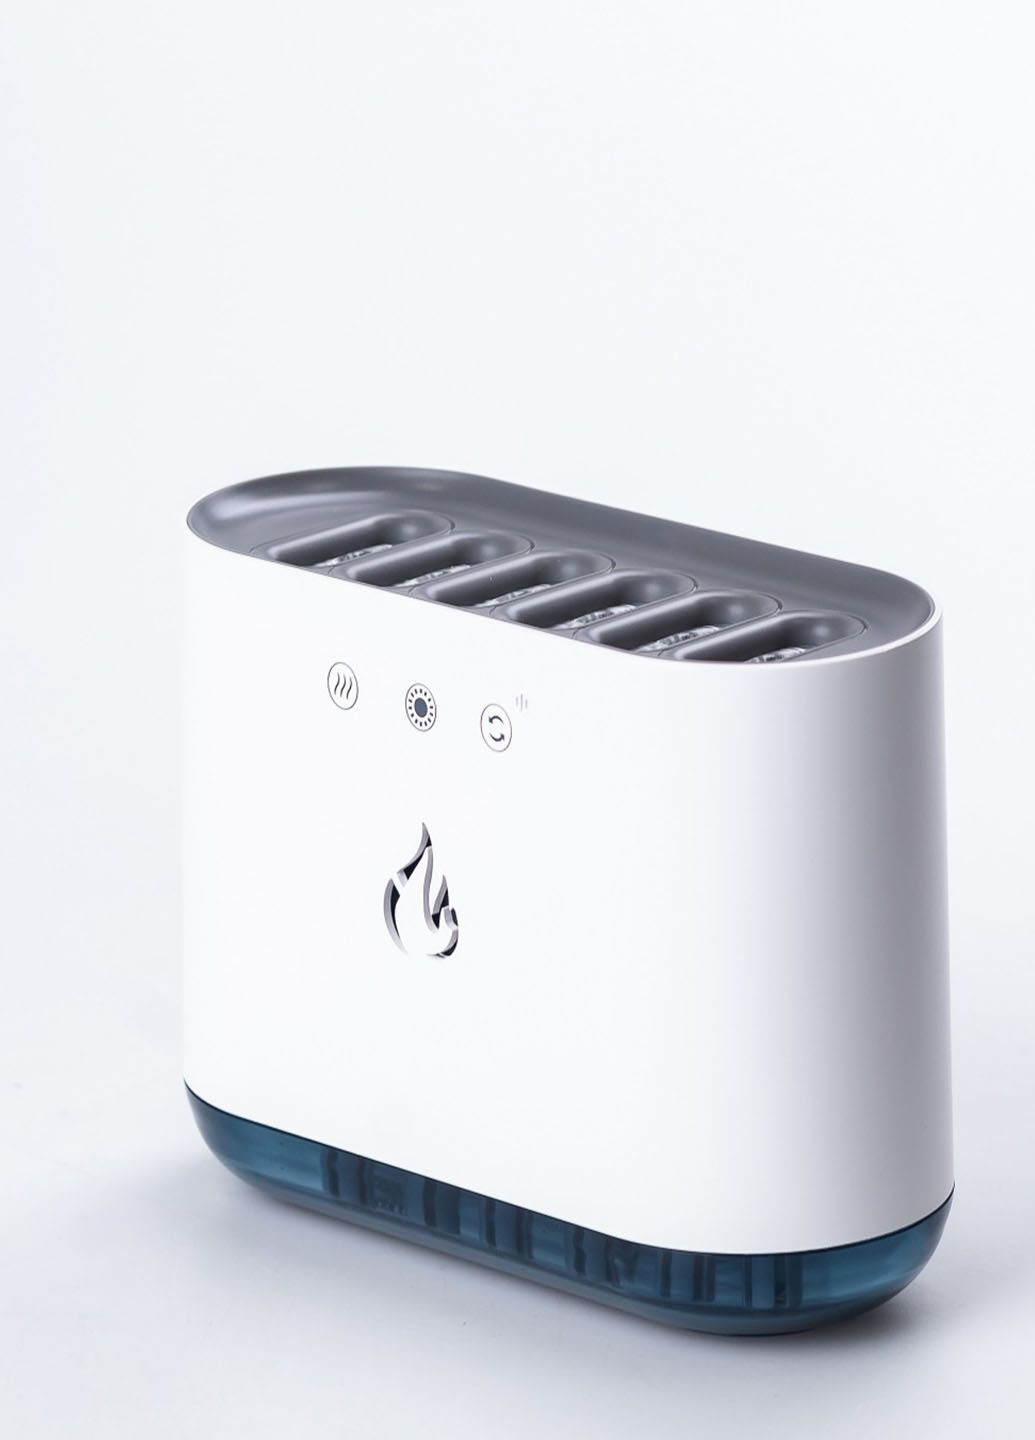 Зволожувач повітря ультразвуковий з RGB-підсвічуванням Pickup Dynamic з синхронізацією та музикою 900 мл Humidifier (290416621)